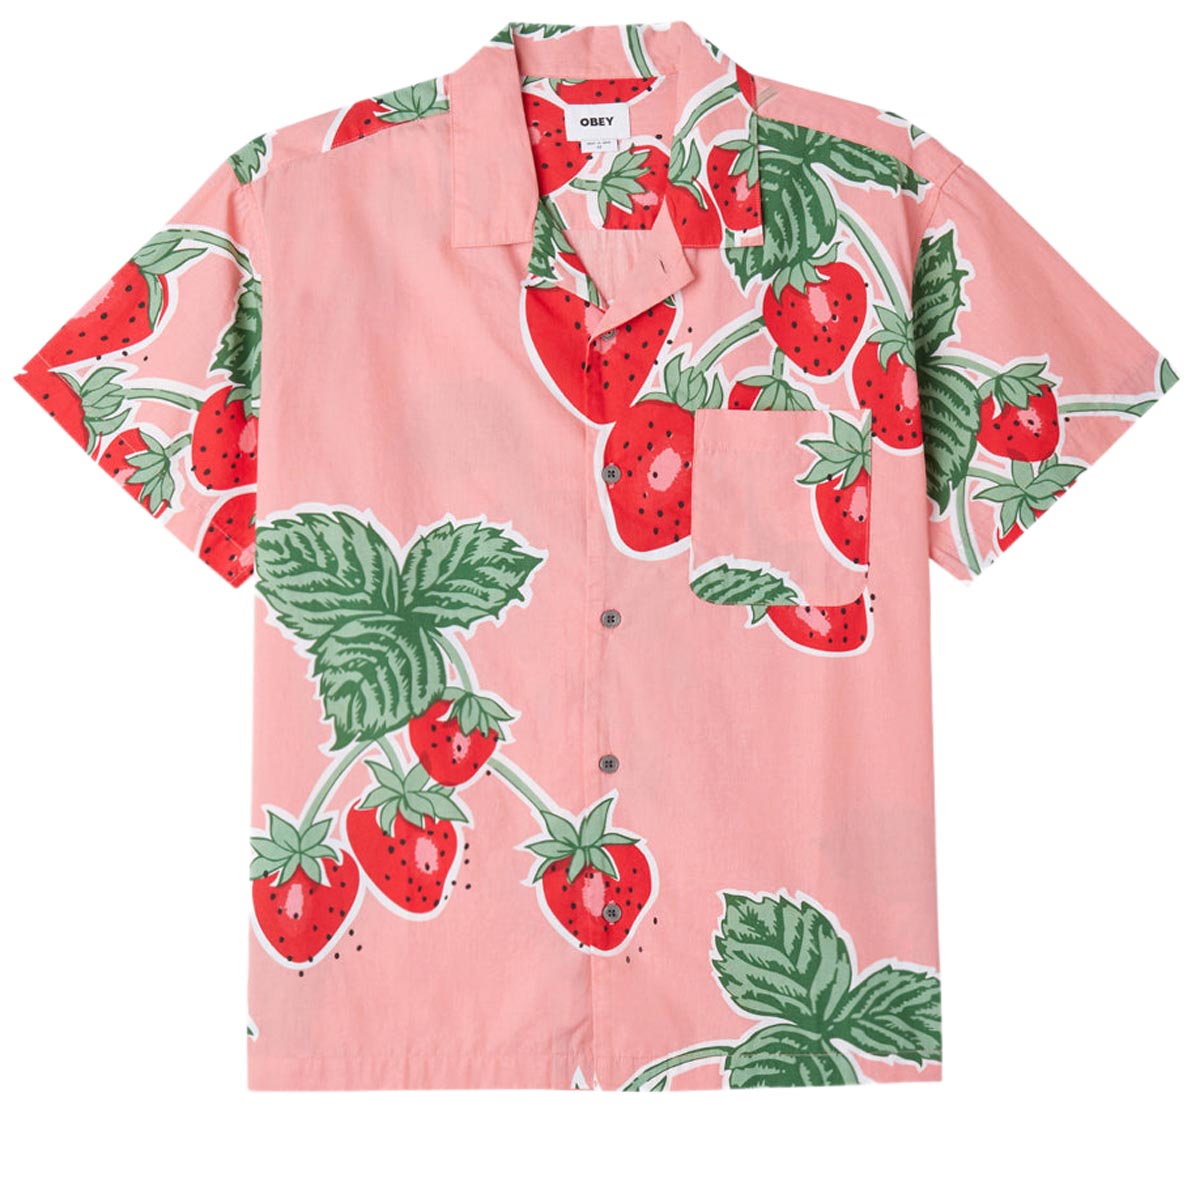 Obey Jumbo Berries Woven Shirt - Flamingo Pink Multi image 1